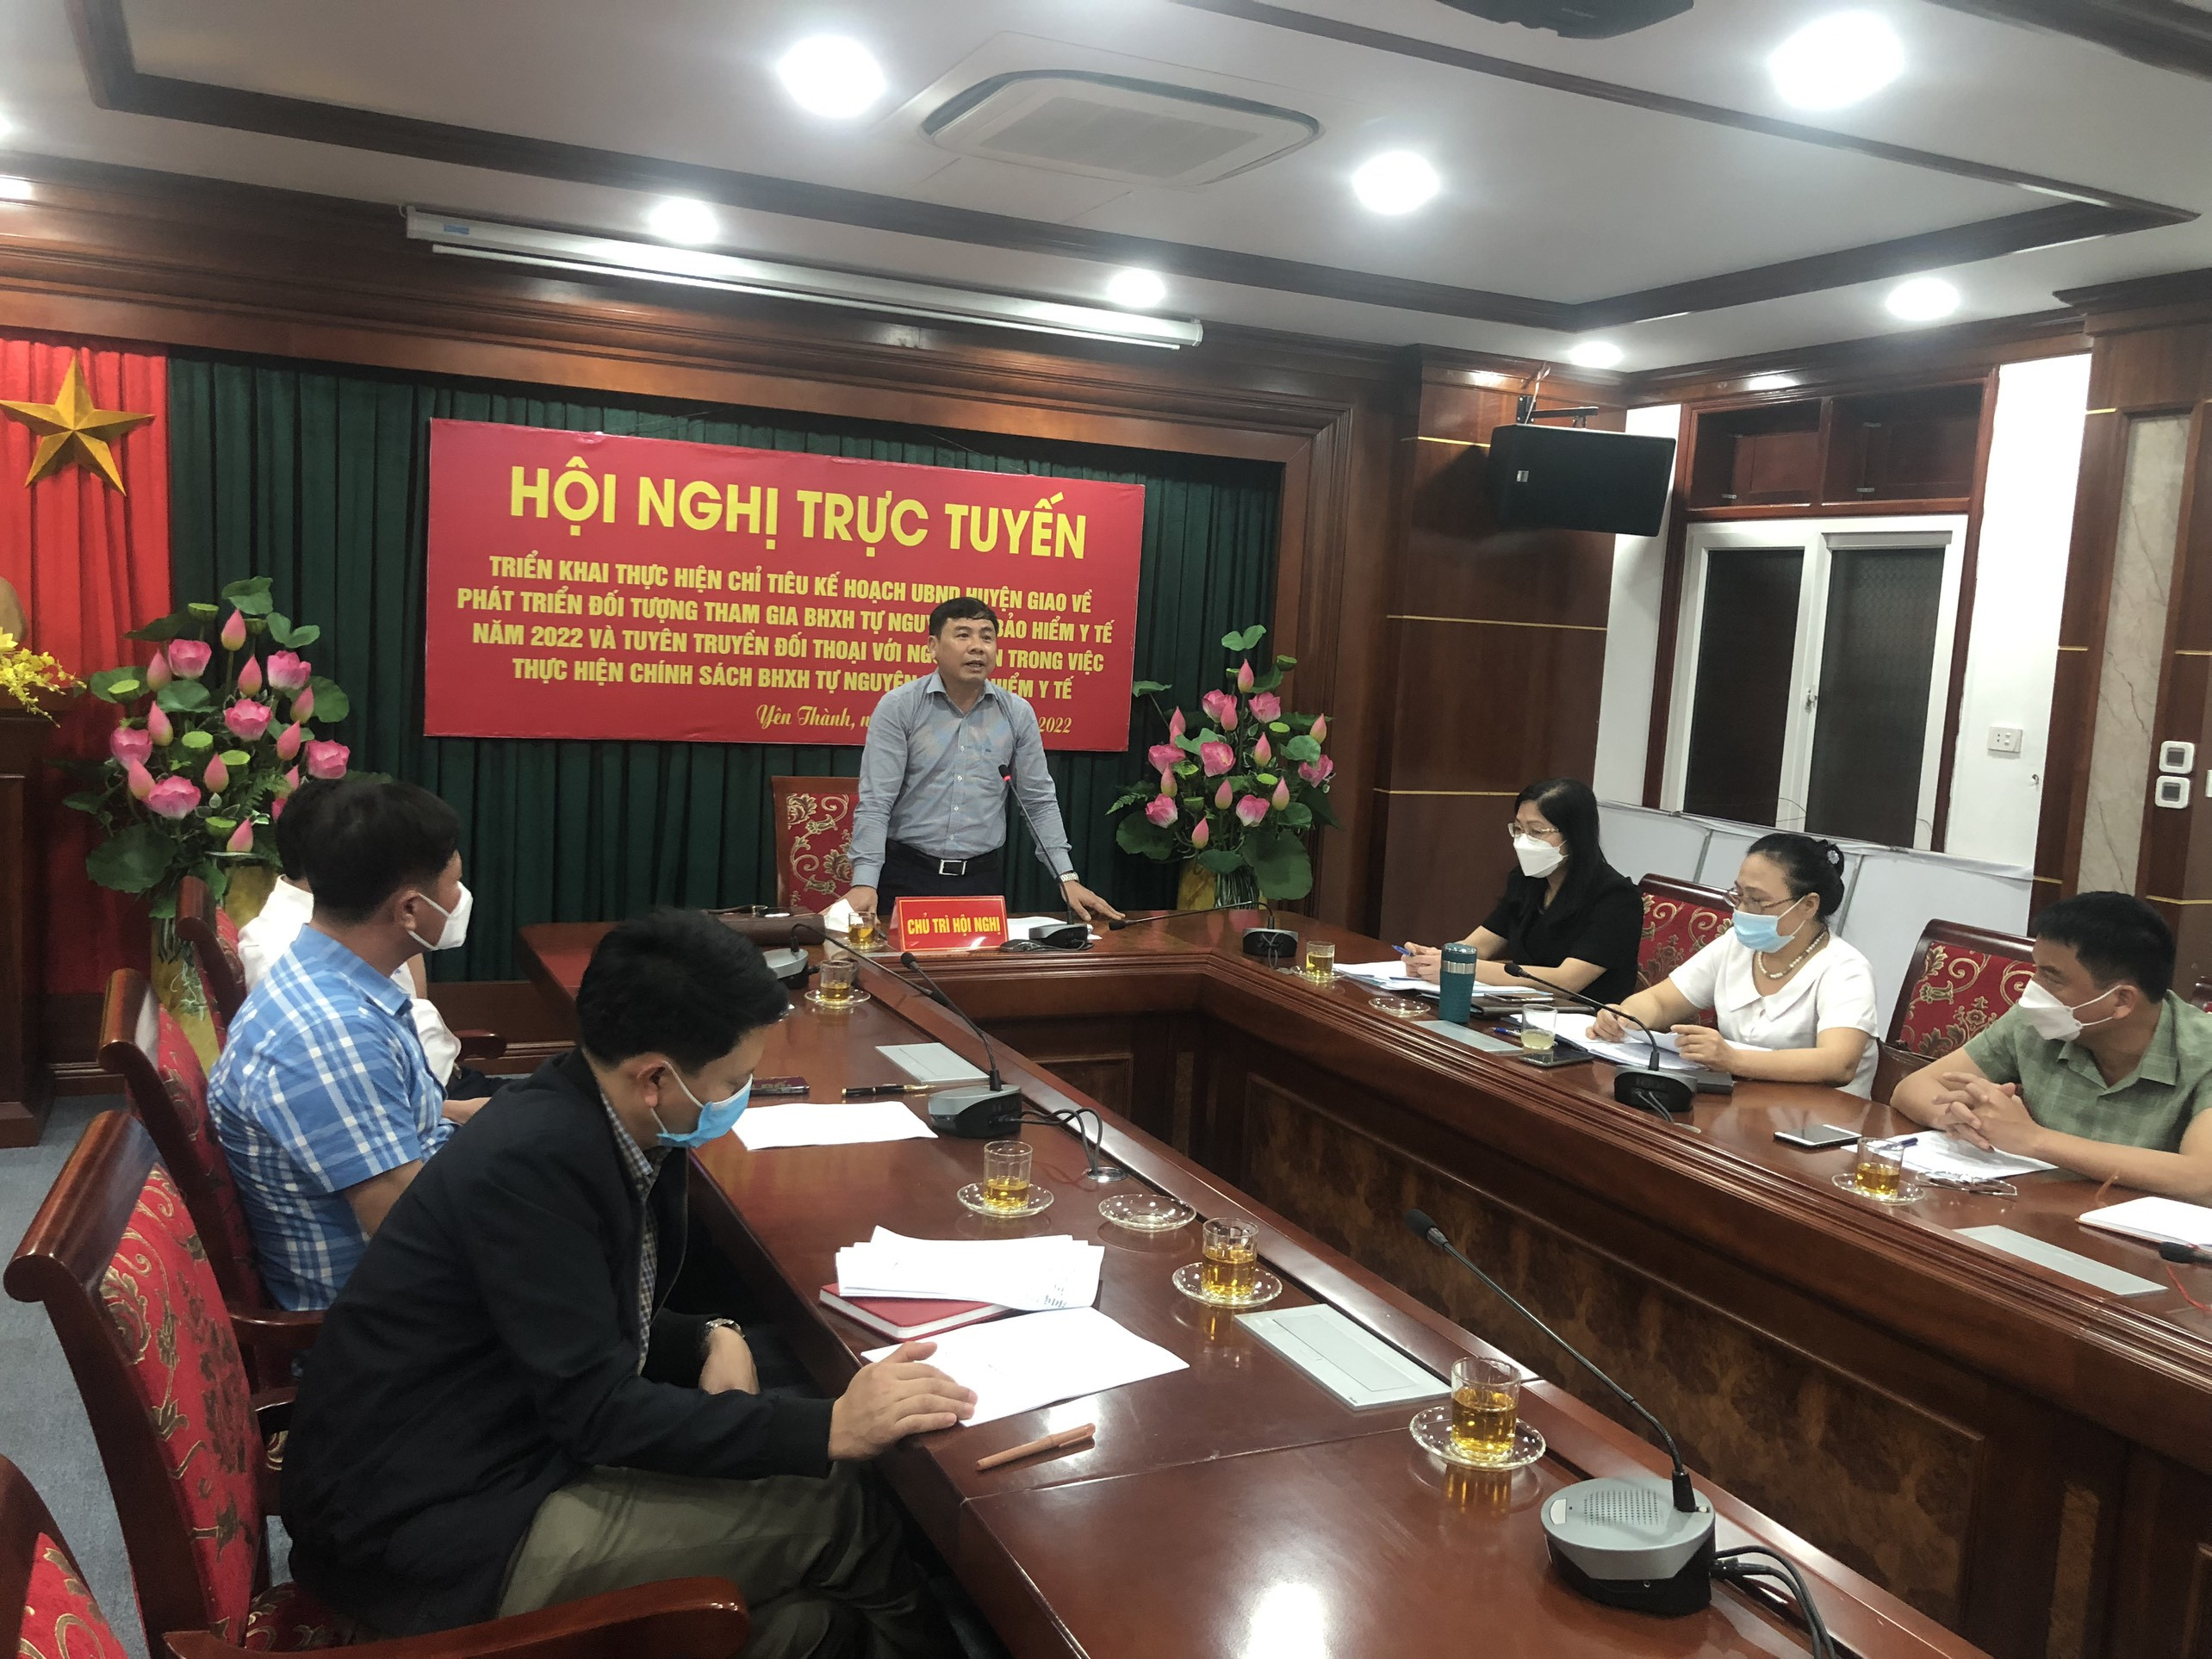 UBND huyện Yên Thành tổ chức Hội nghị trực tuyến triển khai chỉ tiêu kế hoạch UBND huyện giao về phát triển đối tượng tham gia BHXH tự nguyện, BHYT năm 2022 và tuyên truyền đối thoại với người dân trong việc thực hiện chính sách BHXH tự nguyện và BHYT.